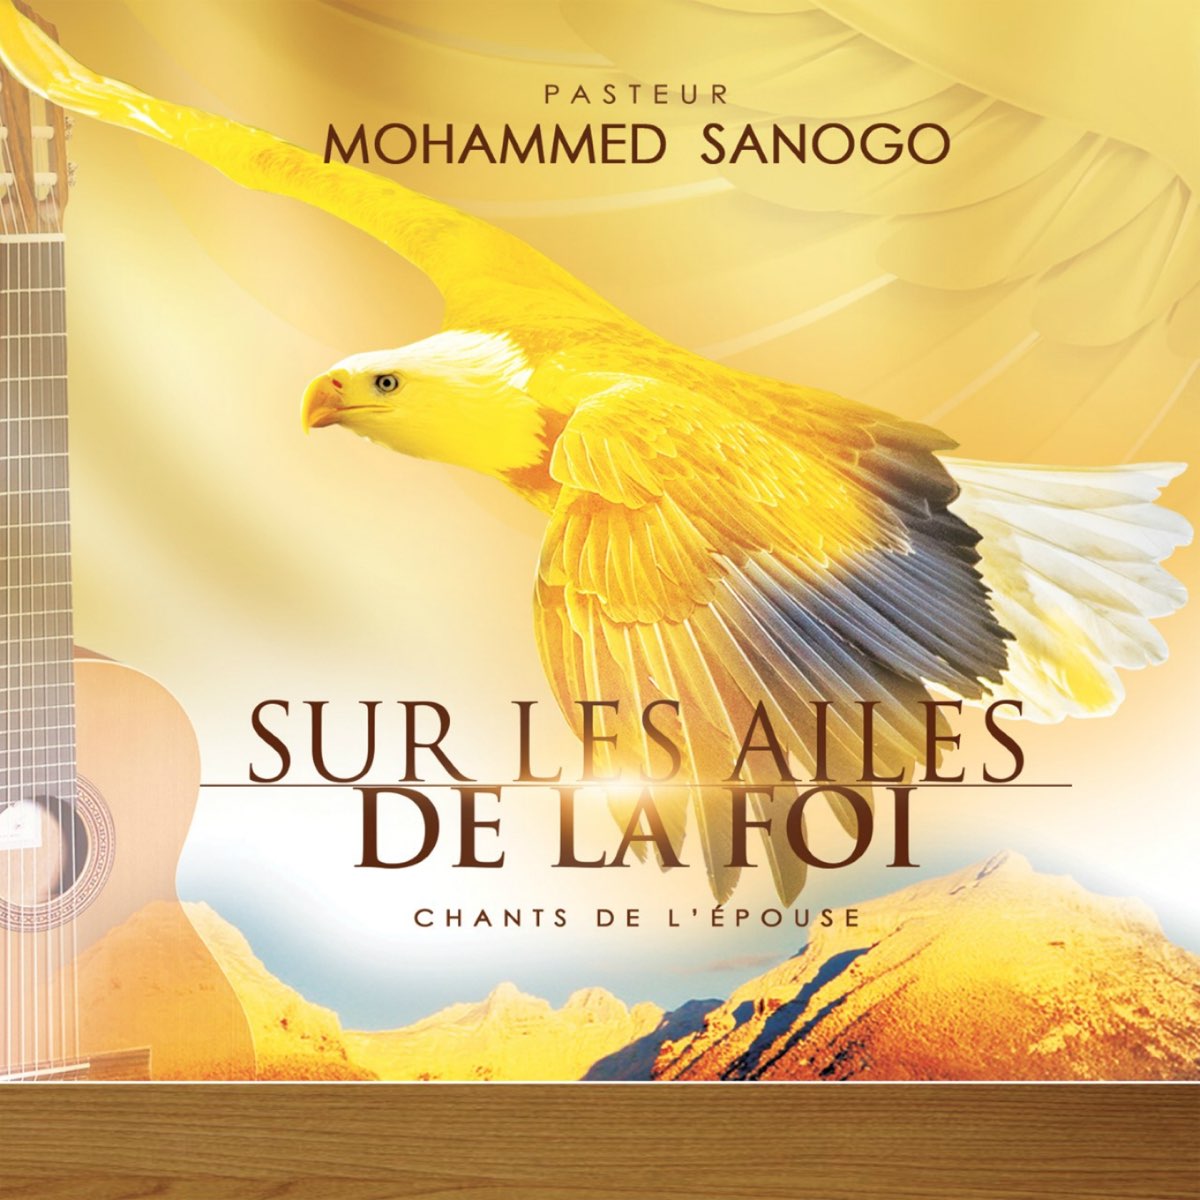 Sur les ailes de la foi : chants de l'épouse par Pasteur Mohammed Sanogo  sur Apple Music